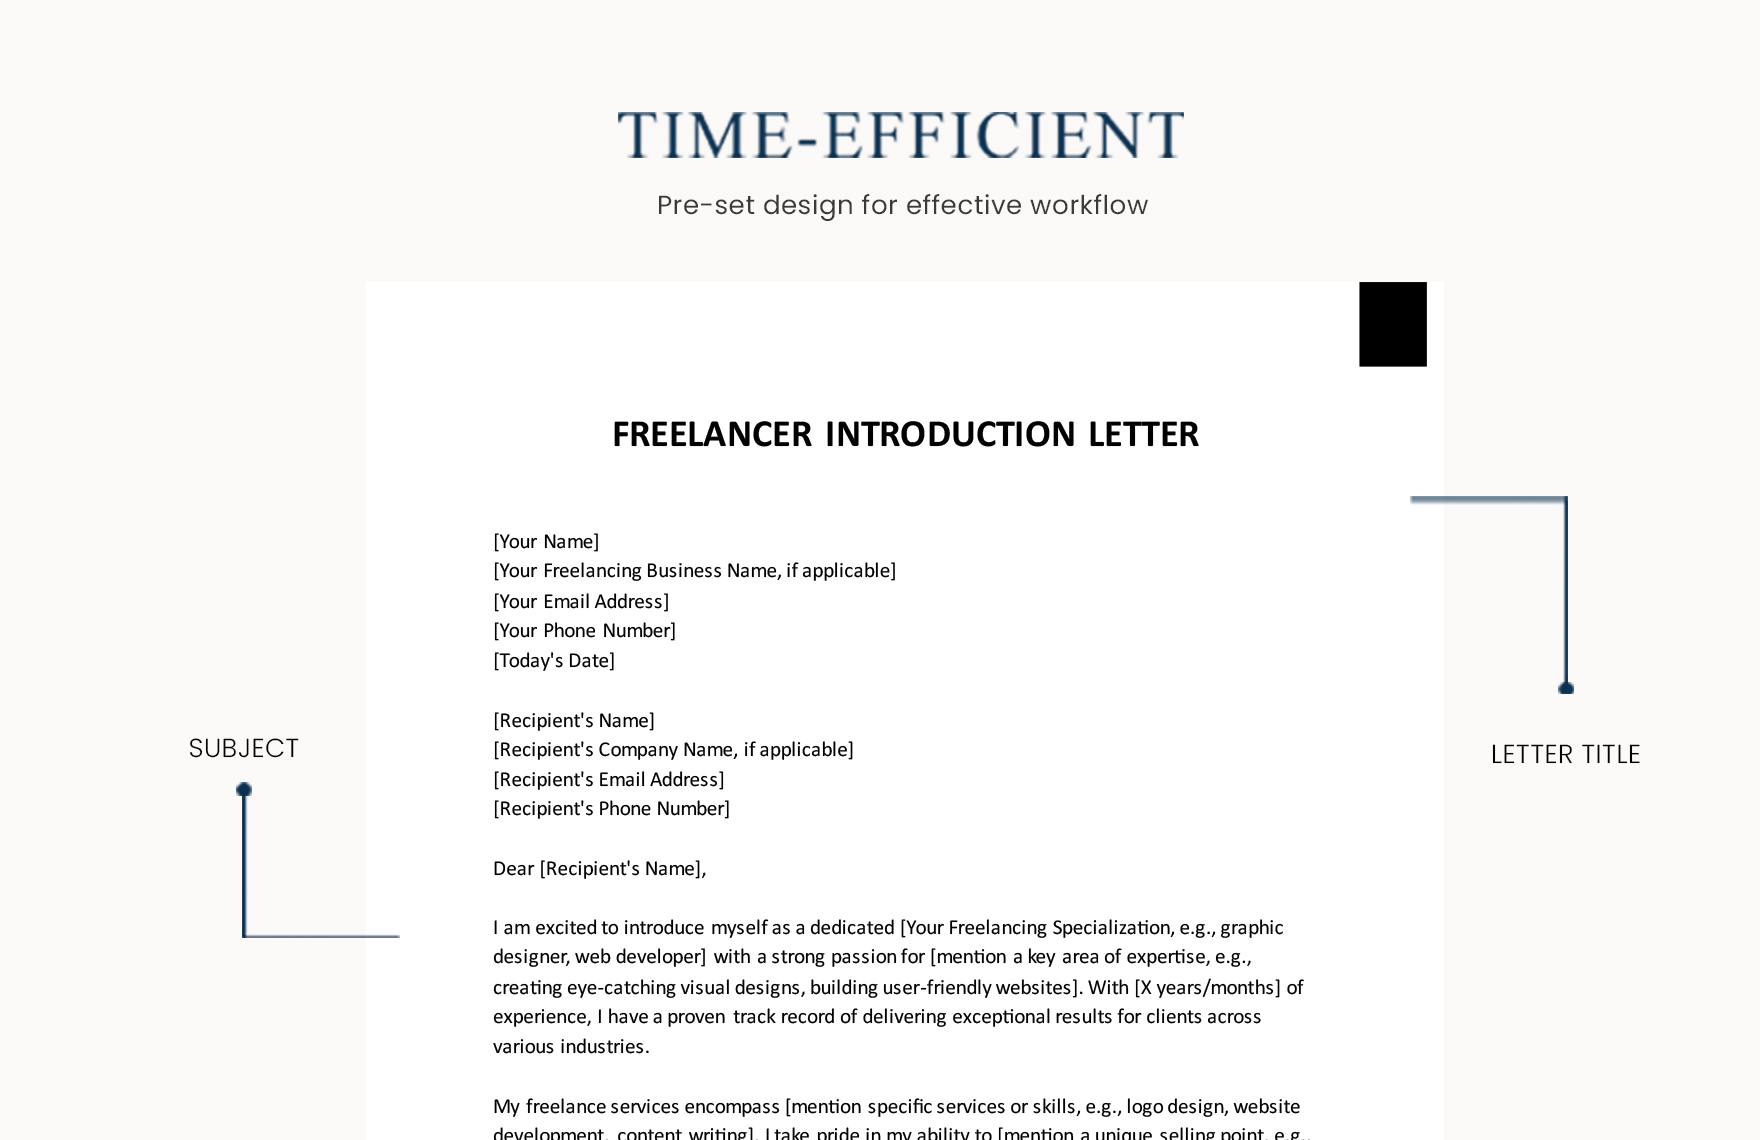 Freelancer Introduction Letter